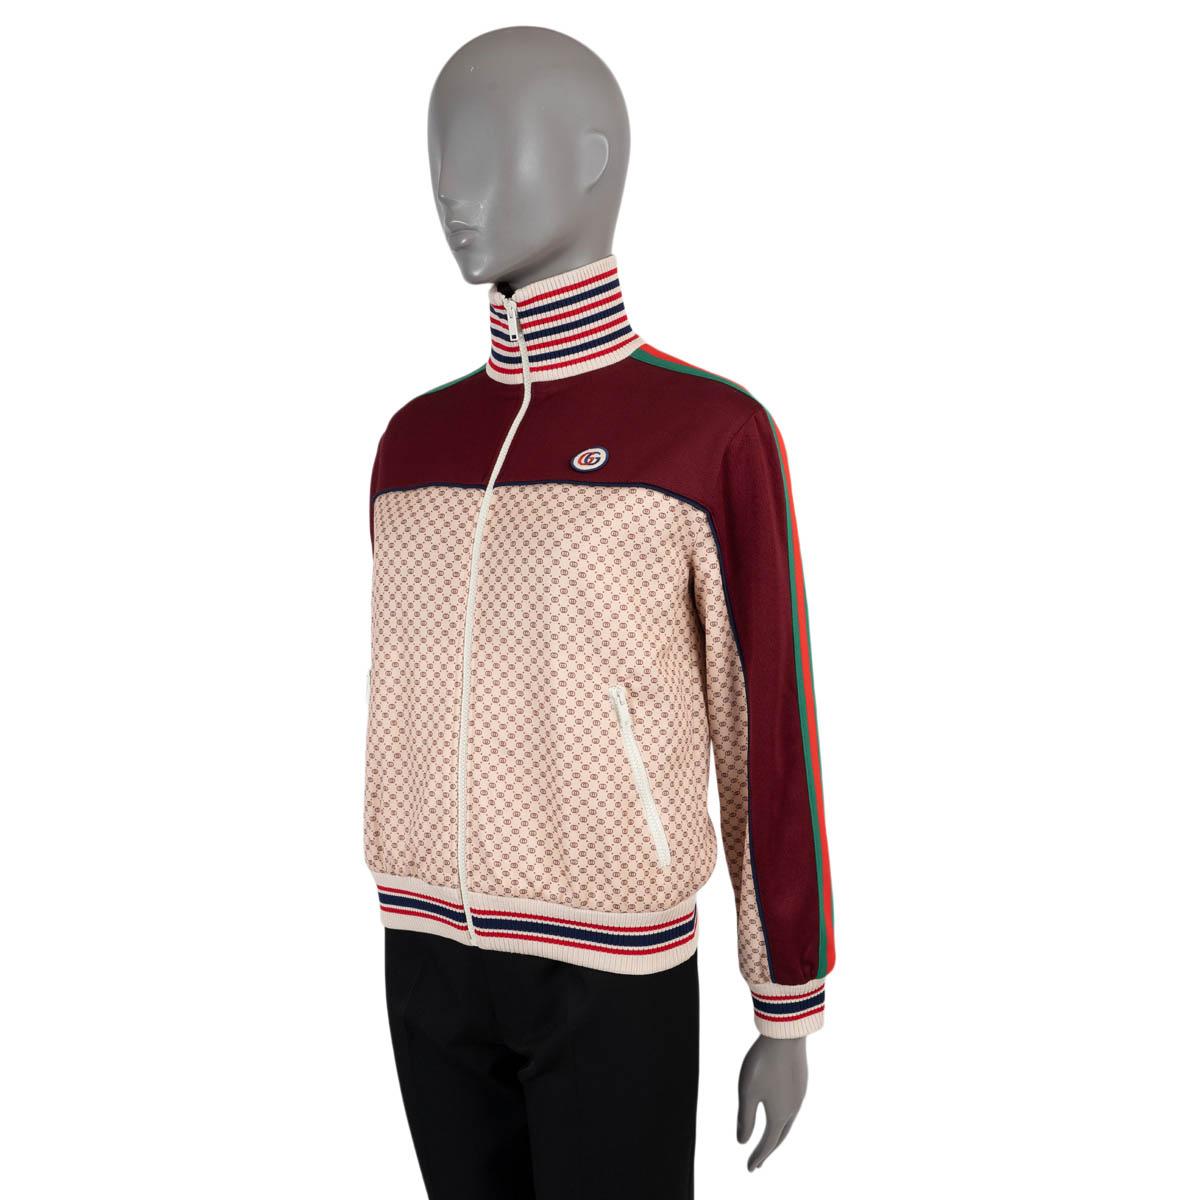 100% authentische Gucci Trainingsjacke in Burgunderrot und Beige mit Monogrammen aus Polyester (55%) und Baumwolle (45%). Mit hohem Halsausschnitt, gestreiften Rippstrickbündchen, einem GG Aufnäher und zwei Reißverschlusstaschen an der Taille.